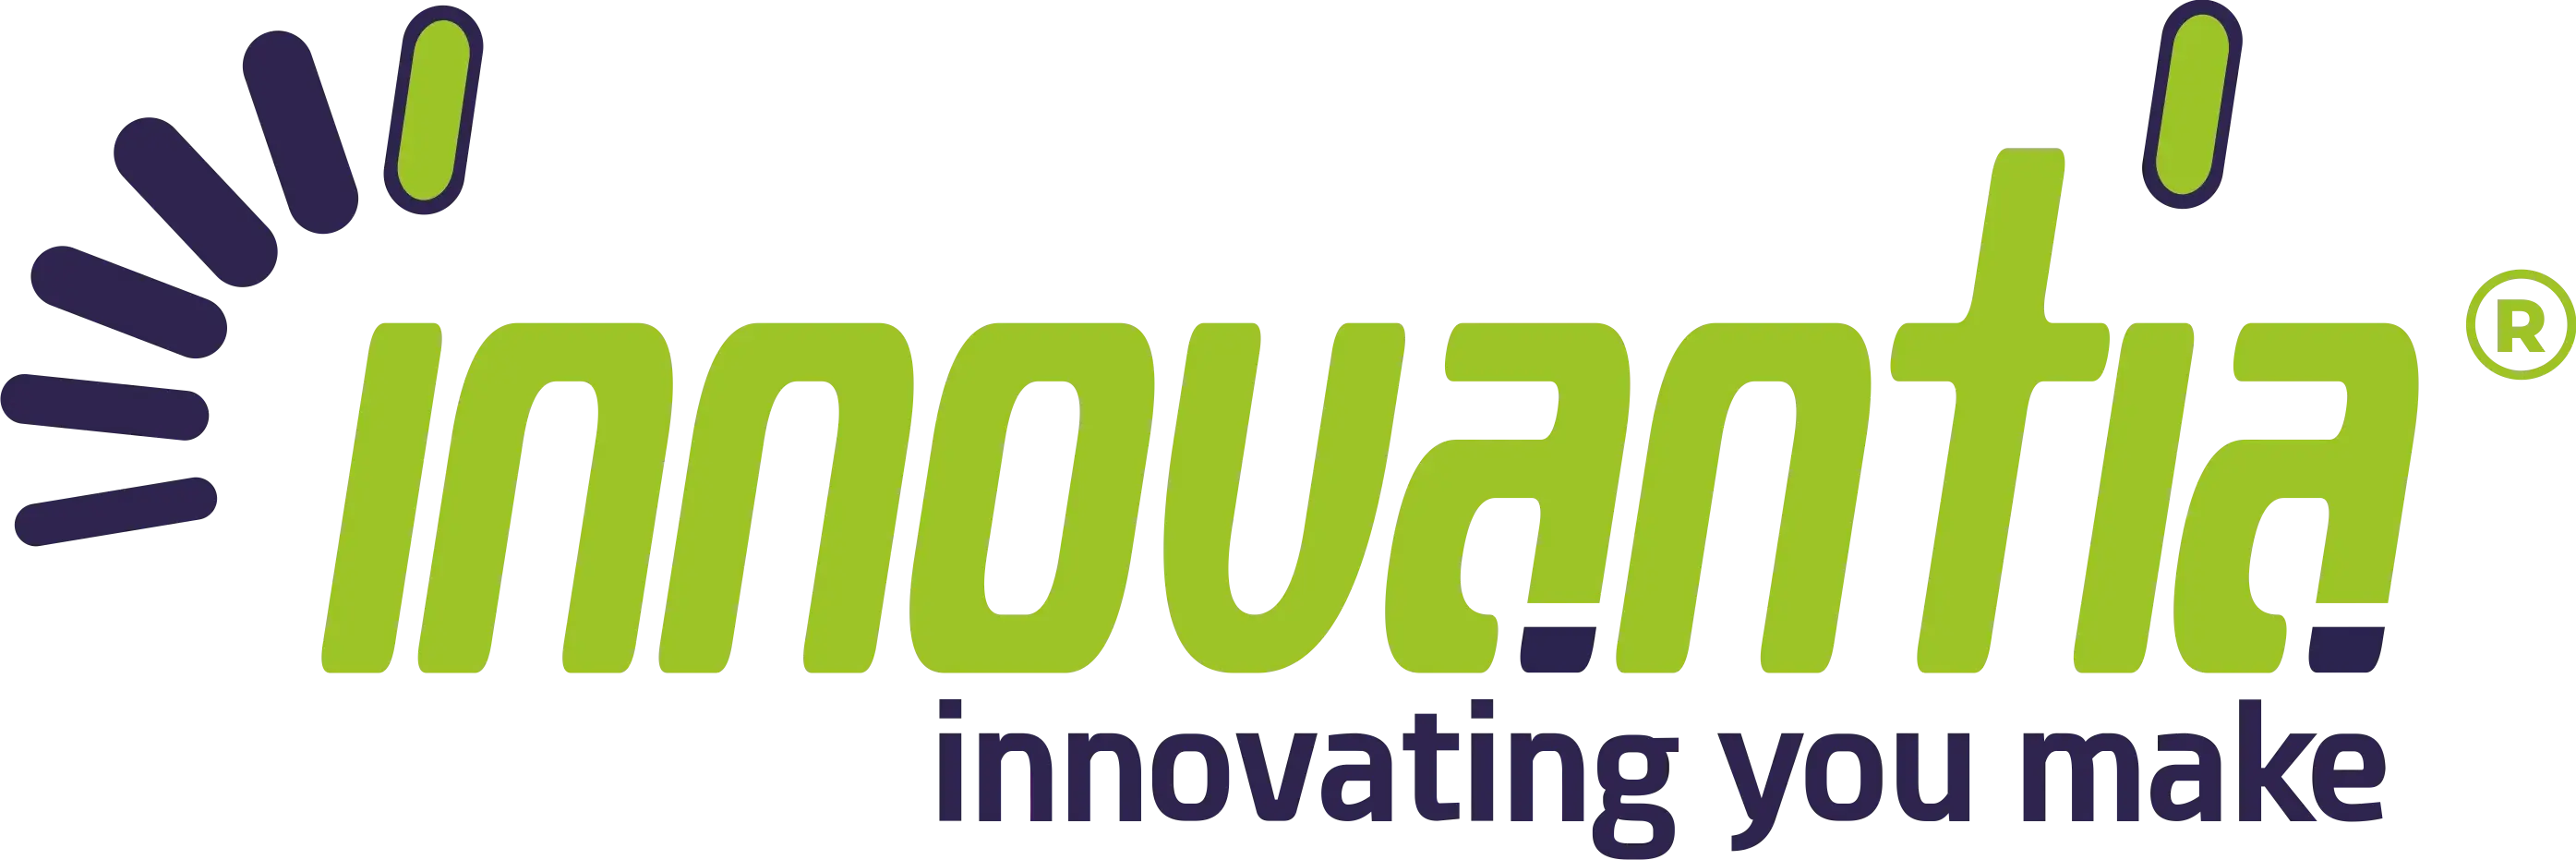 Logo de empresa colaboradora Innovantia